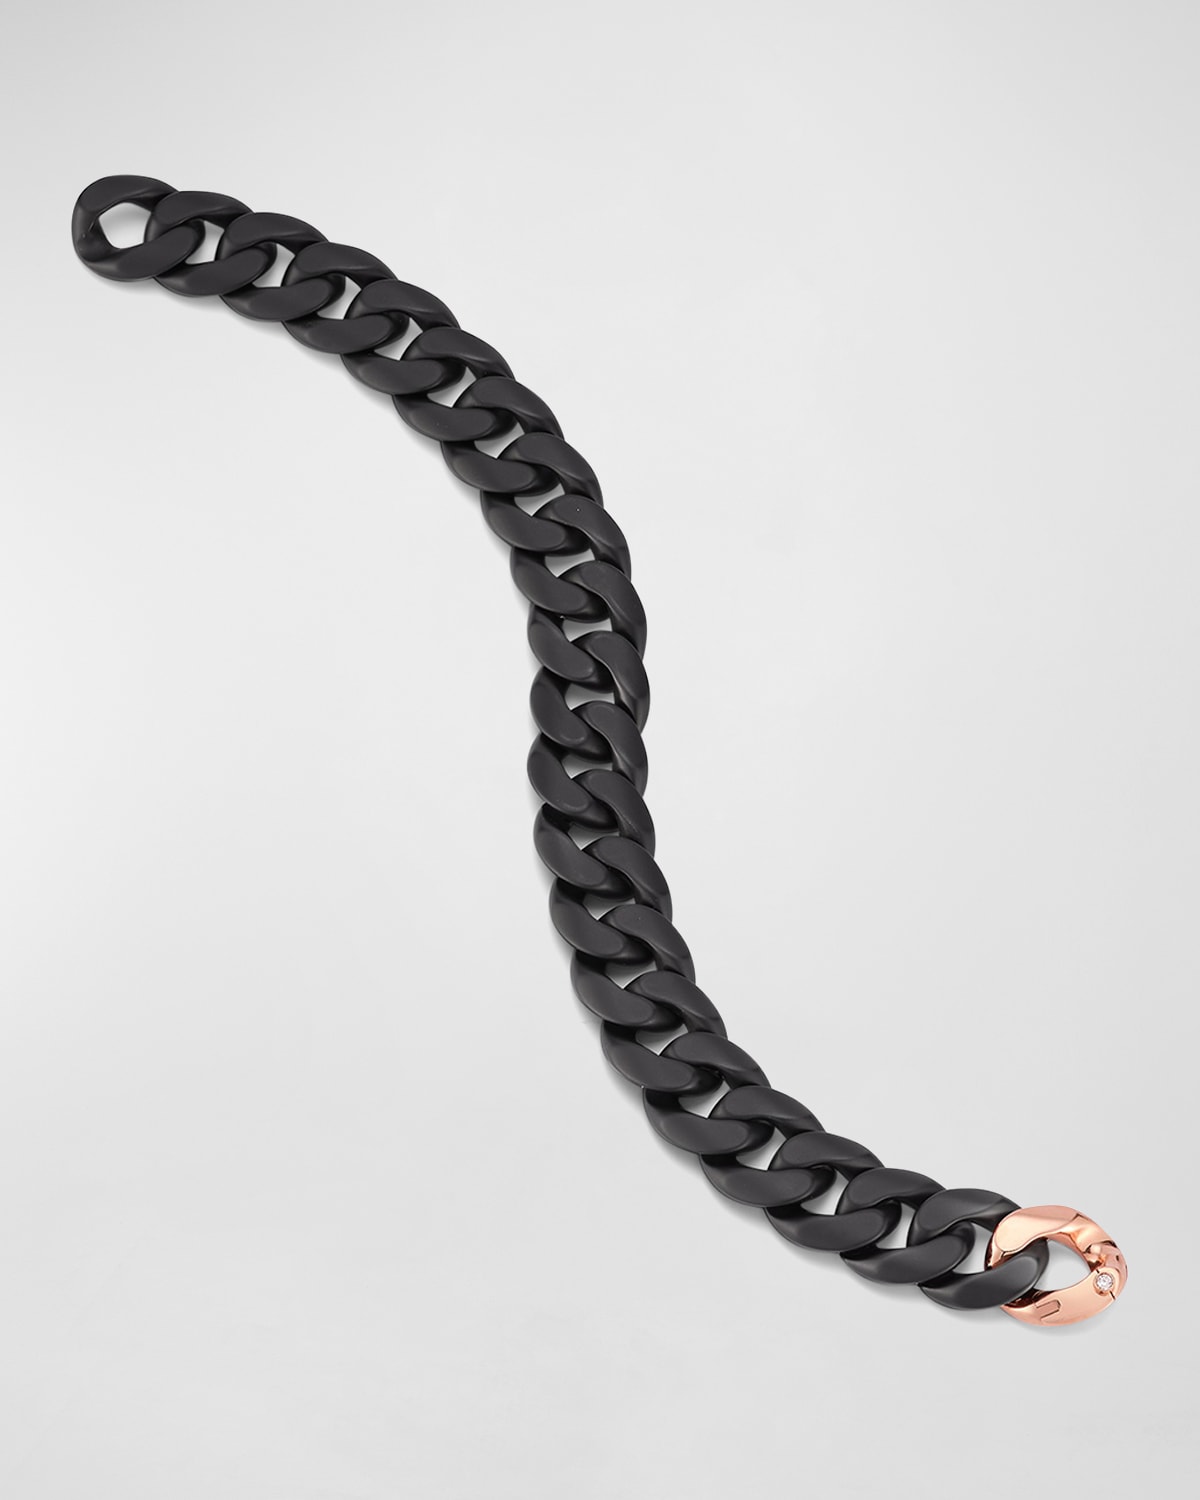 Men's Matte Black Ceramic Link Bracelet with One Rose Gold Link